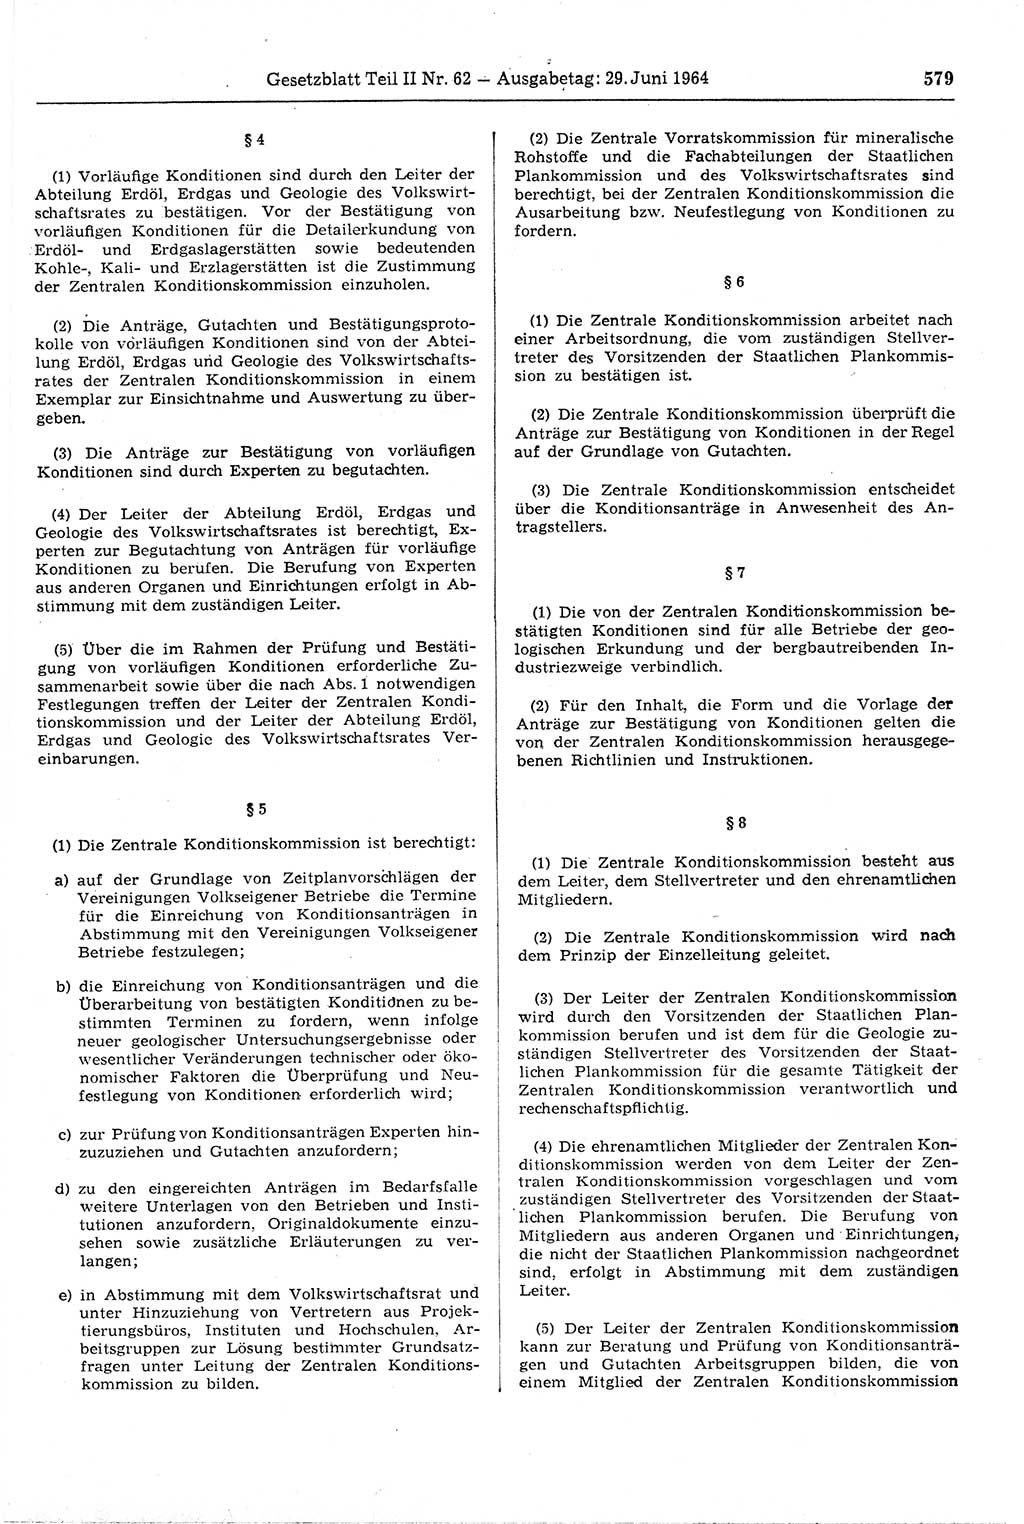 Gesetzblatt (GBl.) der Deutschen Demokratischen Republik (DDR) Teil ⅠⅠ 1964, Seite 579 (GBl. DDR ⅠⅠ 1964, S. 579)